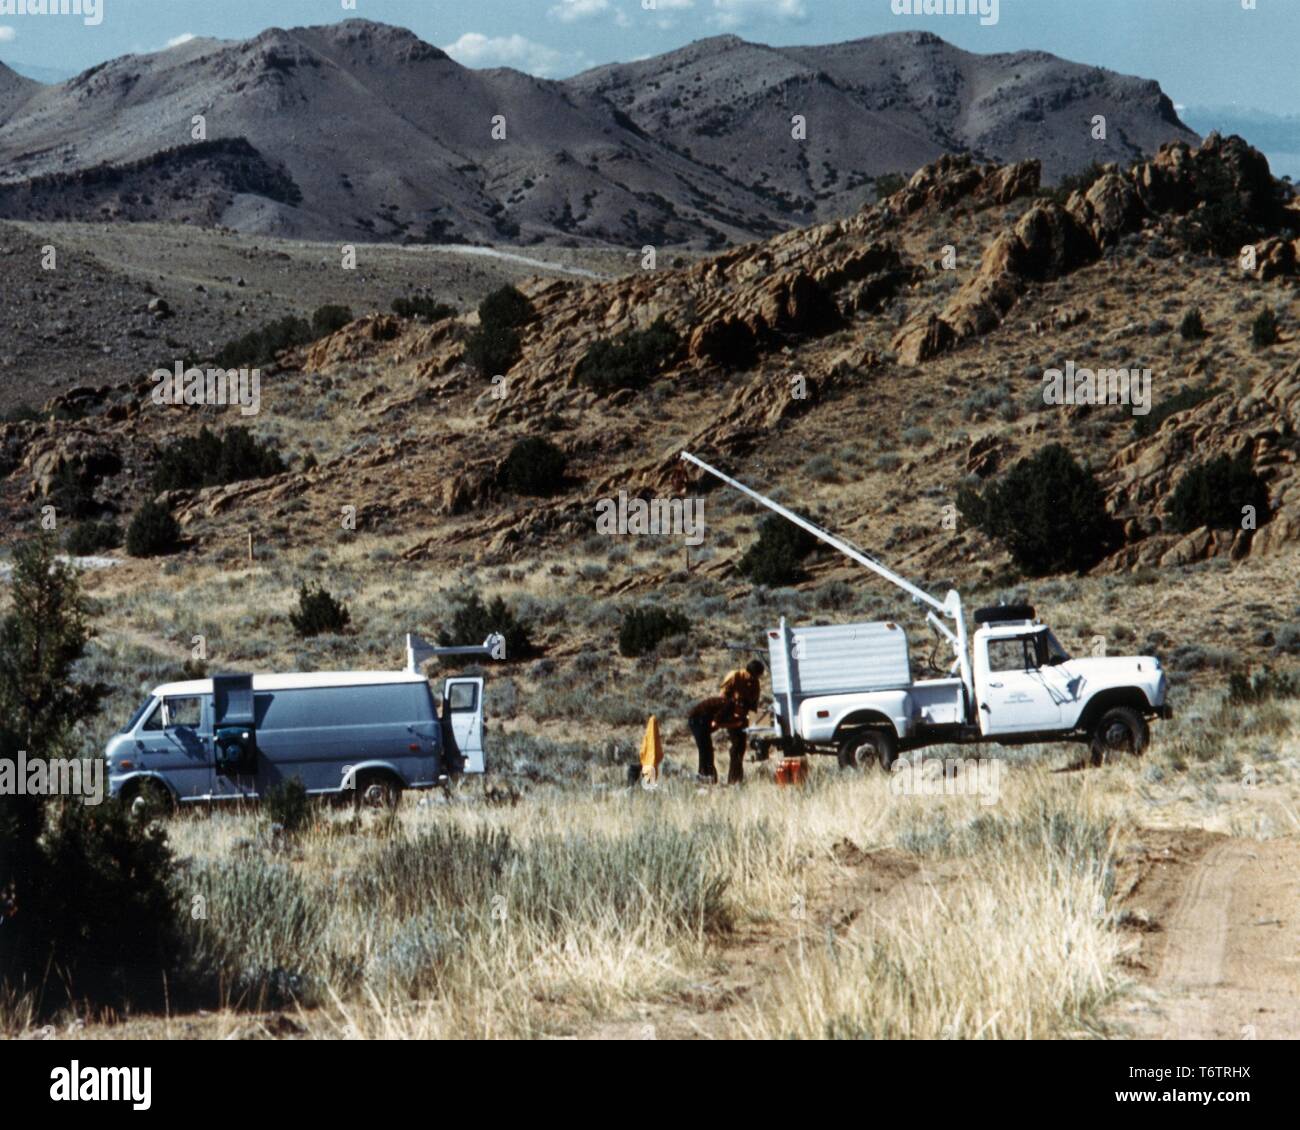 Vérifier les chercheurs une unité d'étude des puits pour évaluer l'étendue des gisements d'uranium dans la région de Copper Mountain, Wyoming, 1975. Image courtoisie du département américain de l'énergie. () Banque D'Images